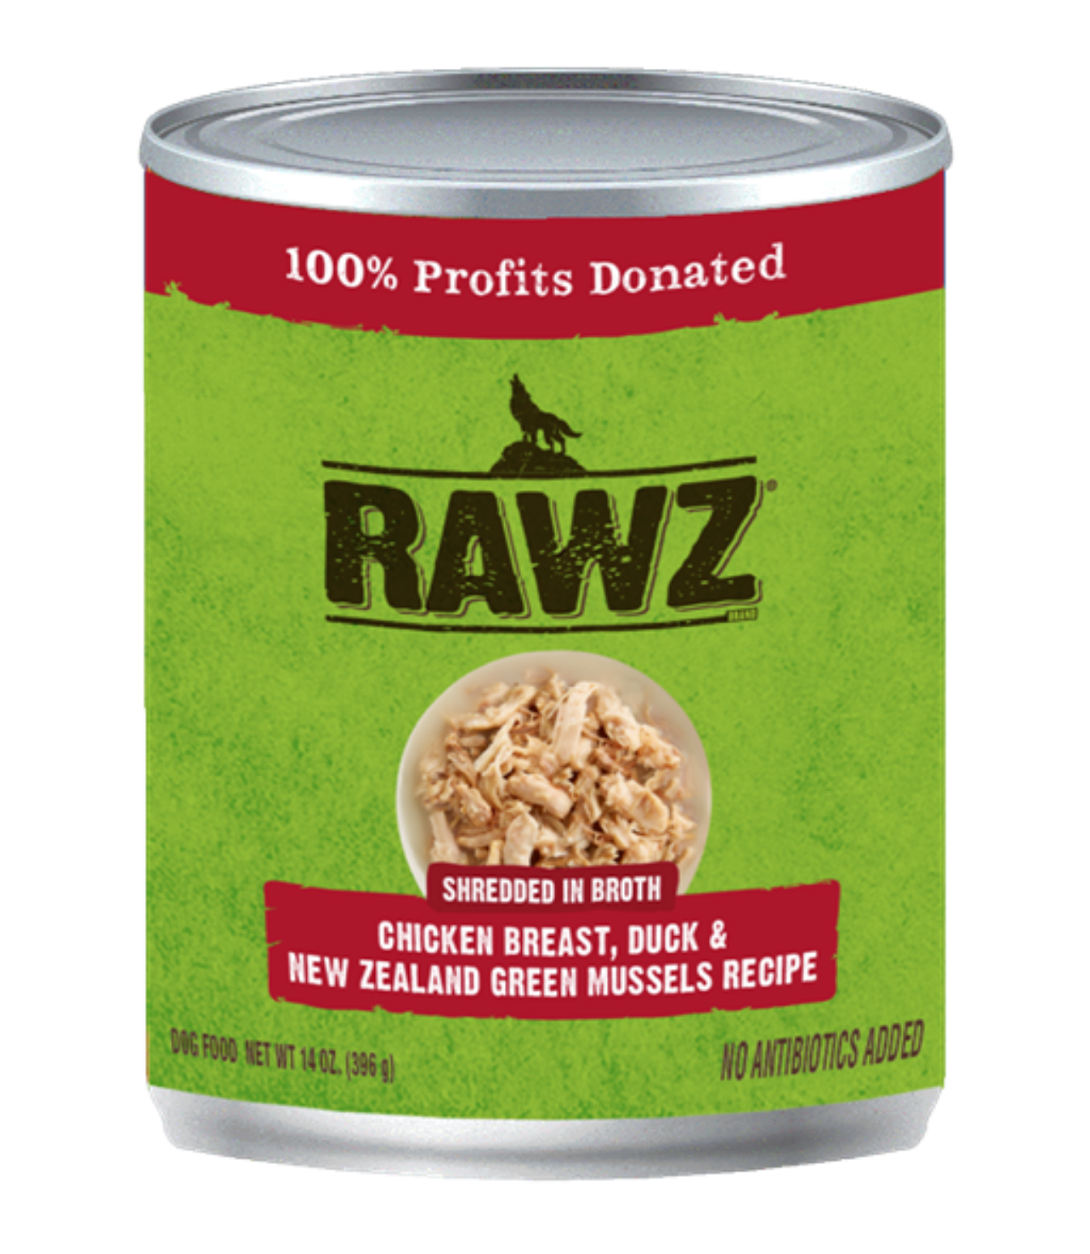 RAWZ Shredded Chicken Breast, Duck & NZGM Dog Can 14 oz.